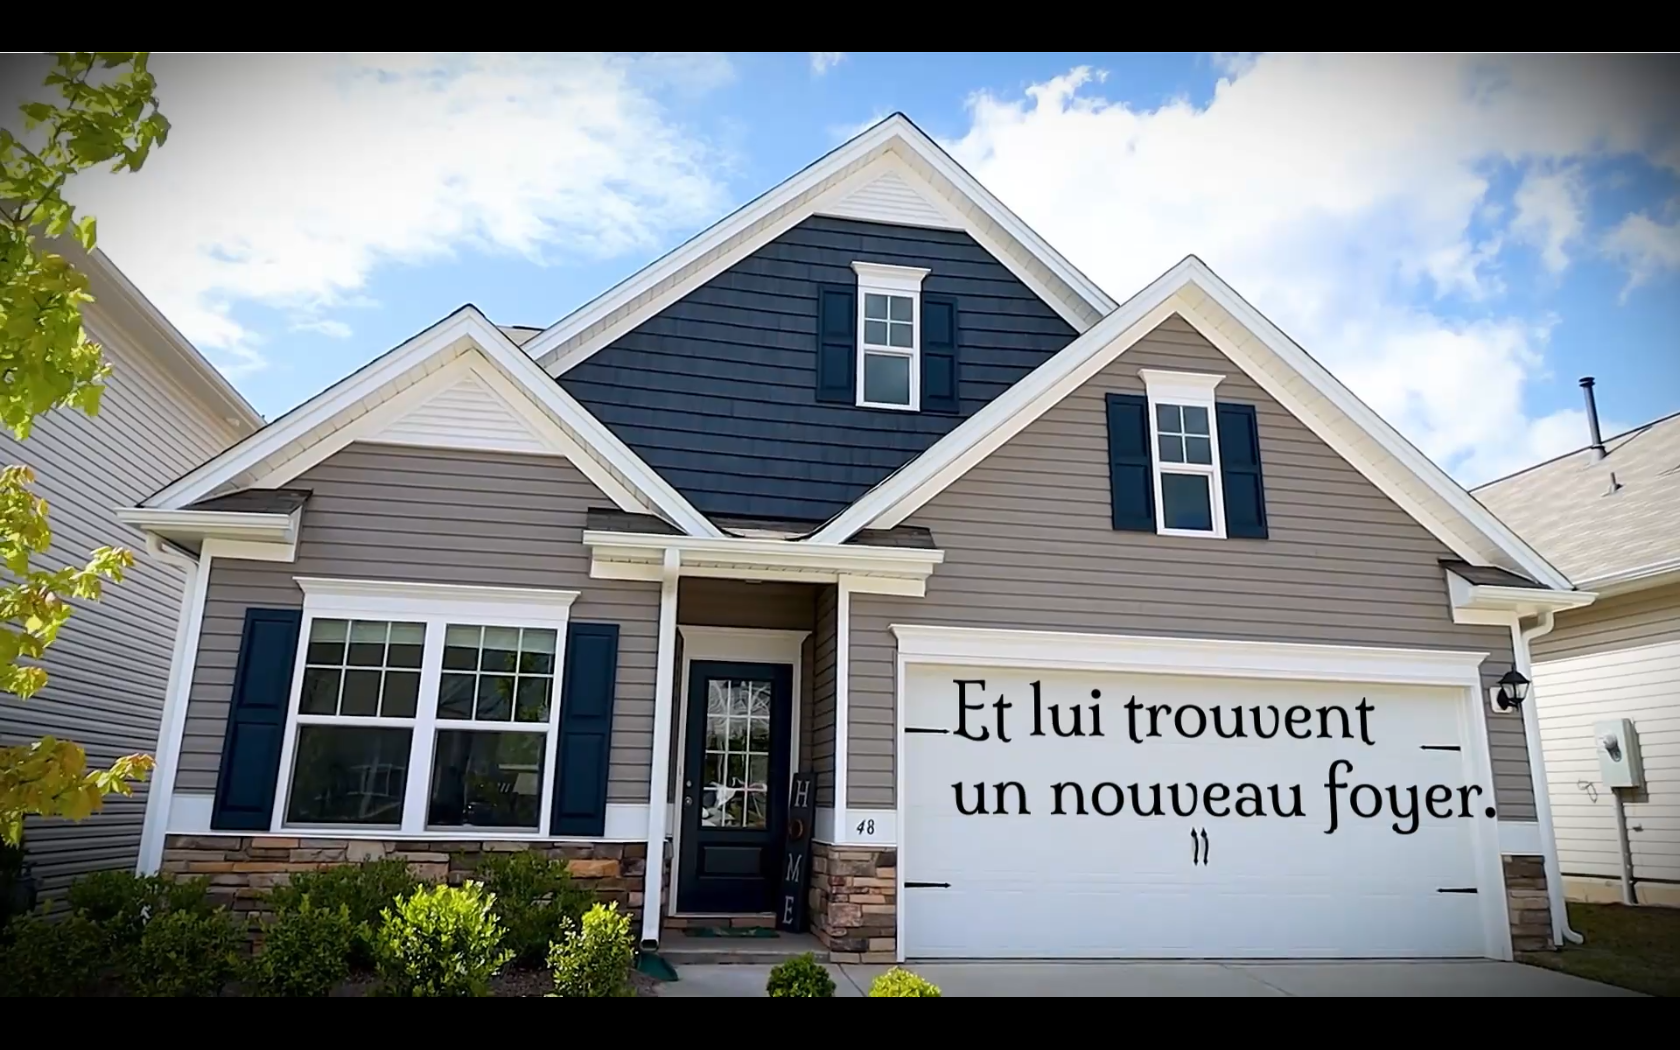 Cette maison présente une porte de garage blanche sur laquelle est écrite "Et lui trouvèrent un nouveau foyer".